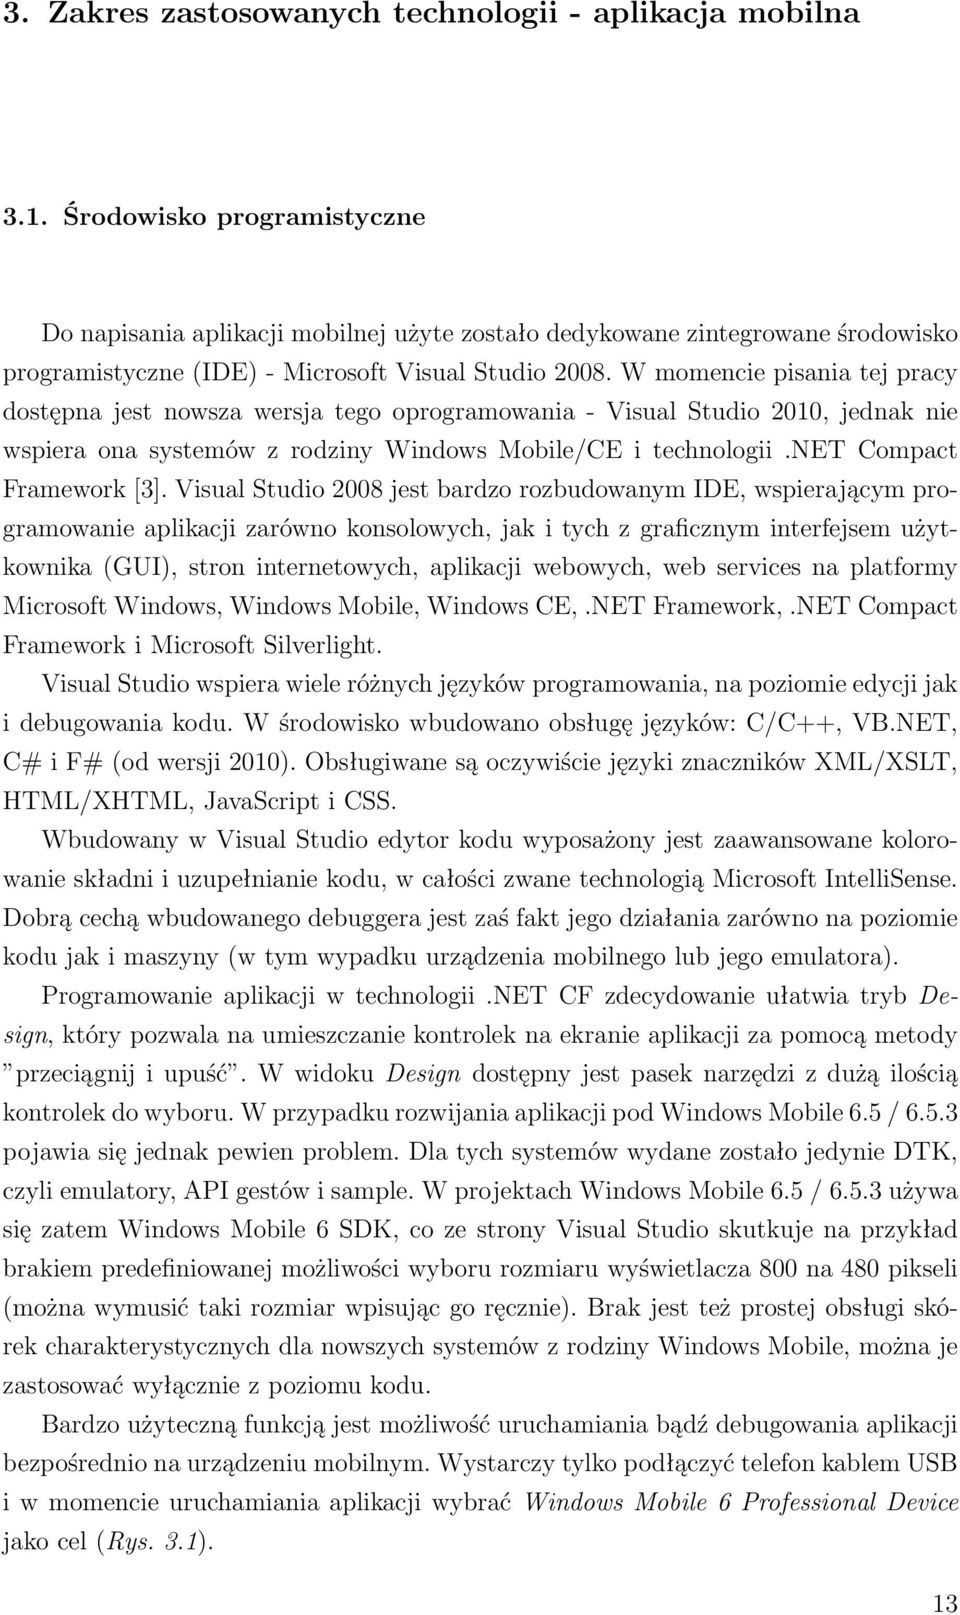 W momencie pisania tej pracy dostępna jest nowsza wersja tego oprogramowania - Visual Studio 2010, jednak nie wspiera ona systemów z rodziny Windows Mobile/CE i technologii.net Compact Framework [3].